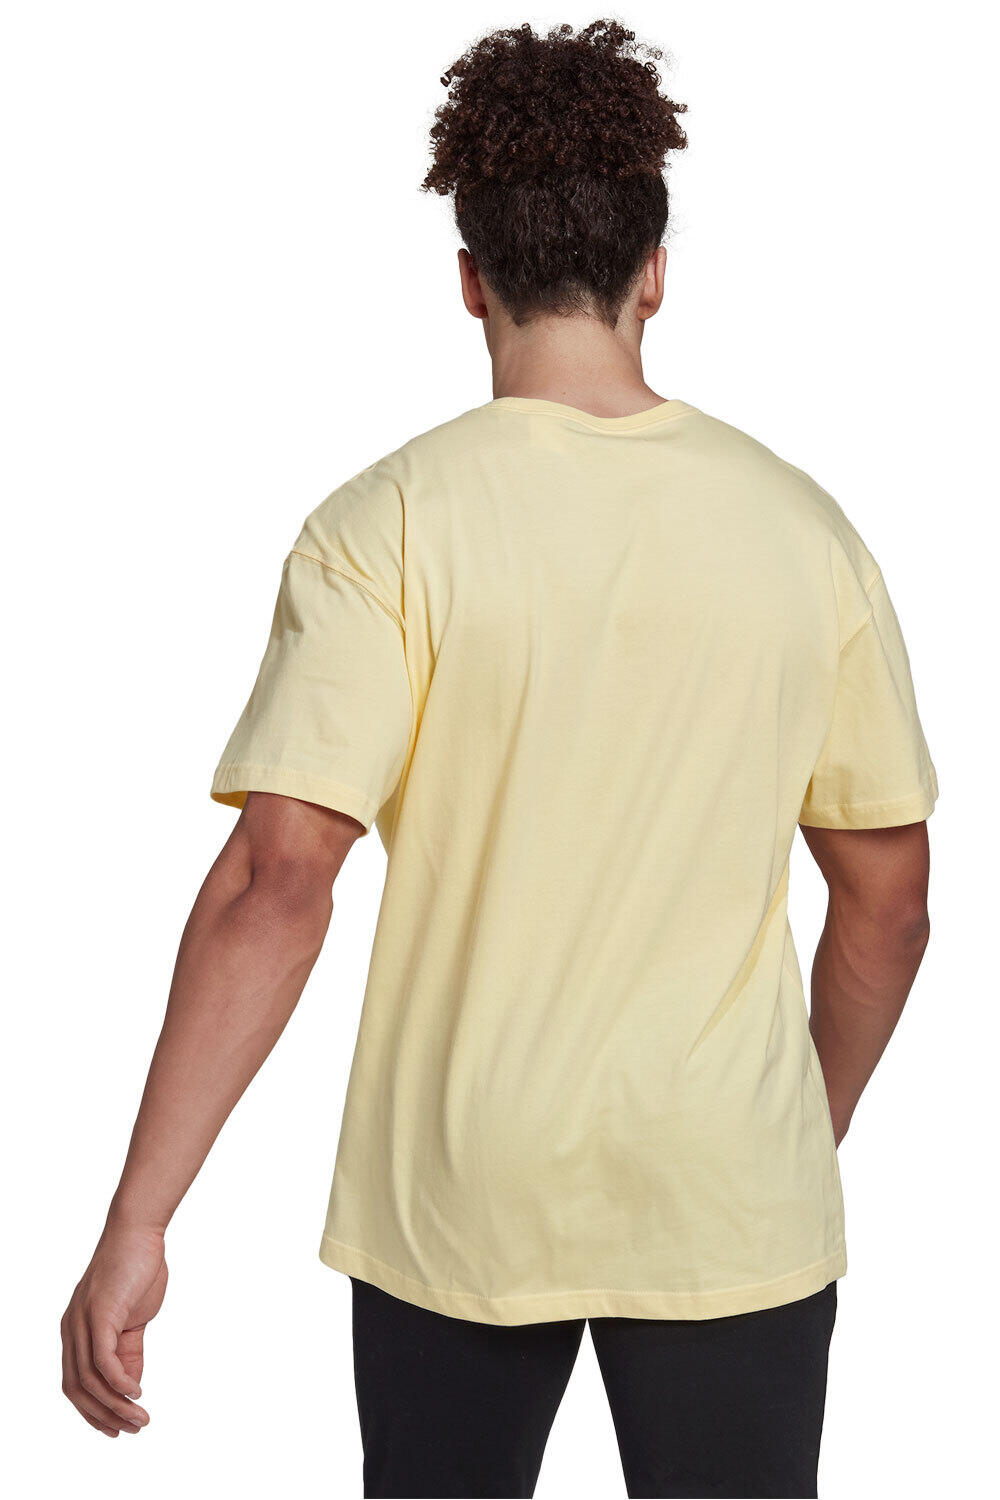 adidas camiseta manga corta hombre Essentials FeelVivid Drop Shoulder vista trasera